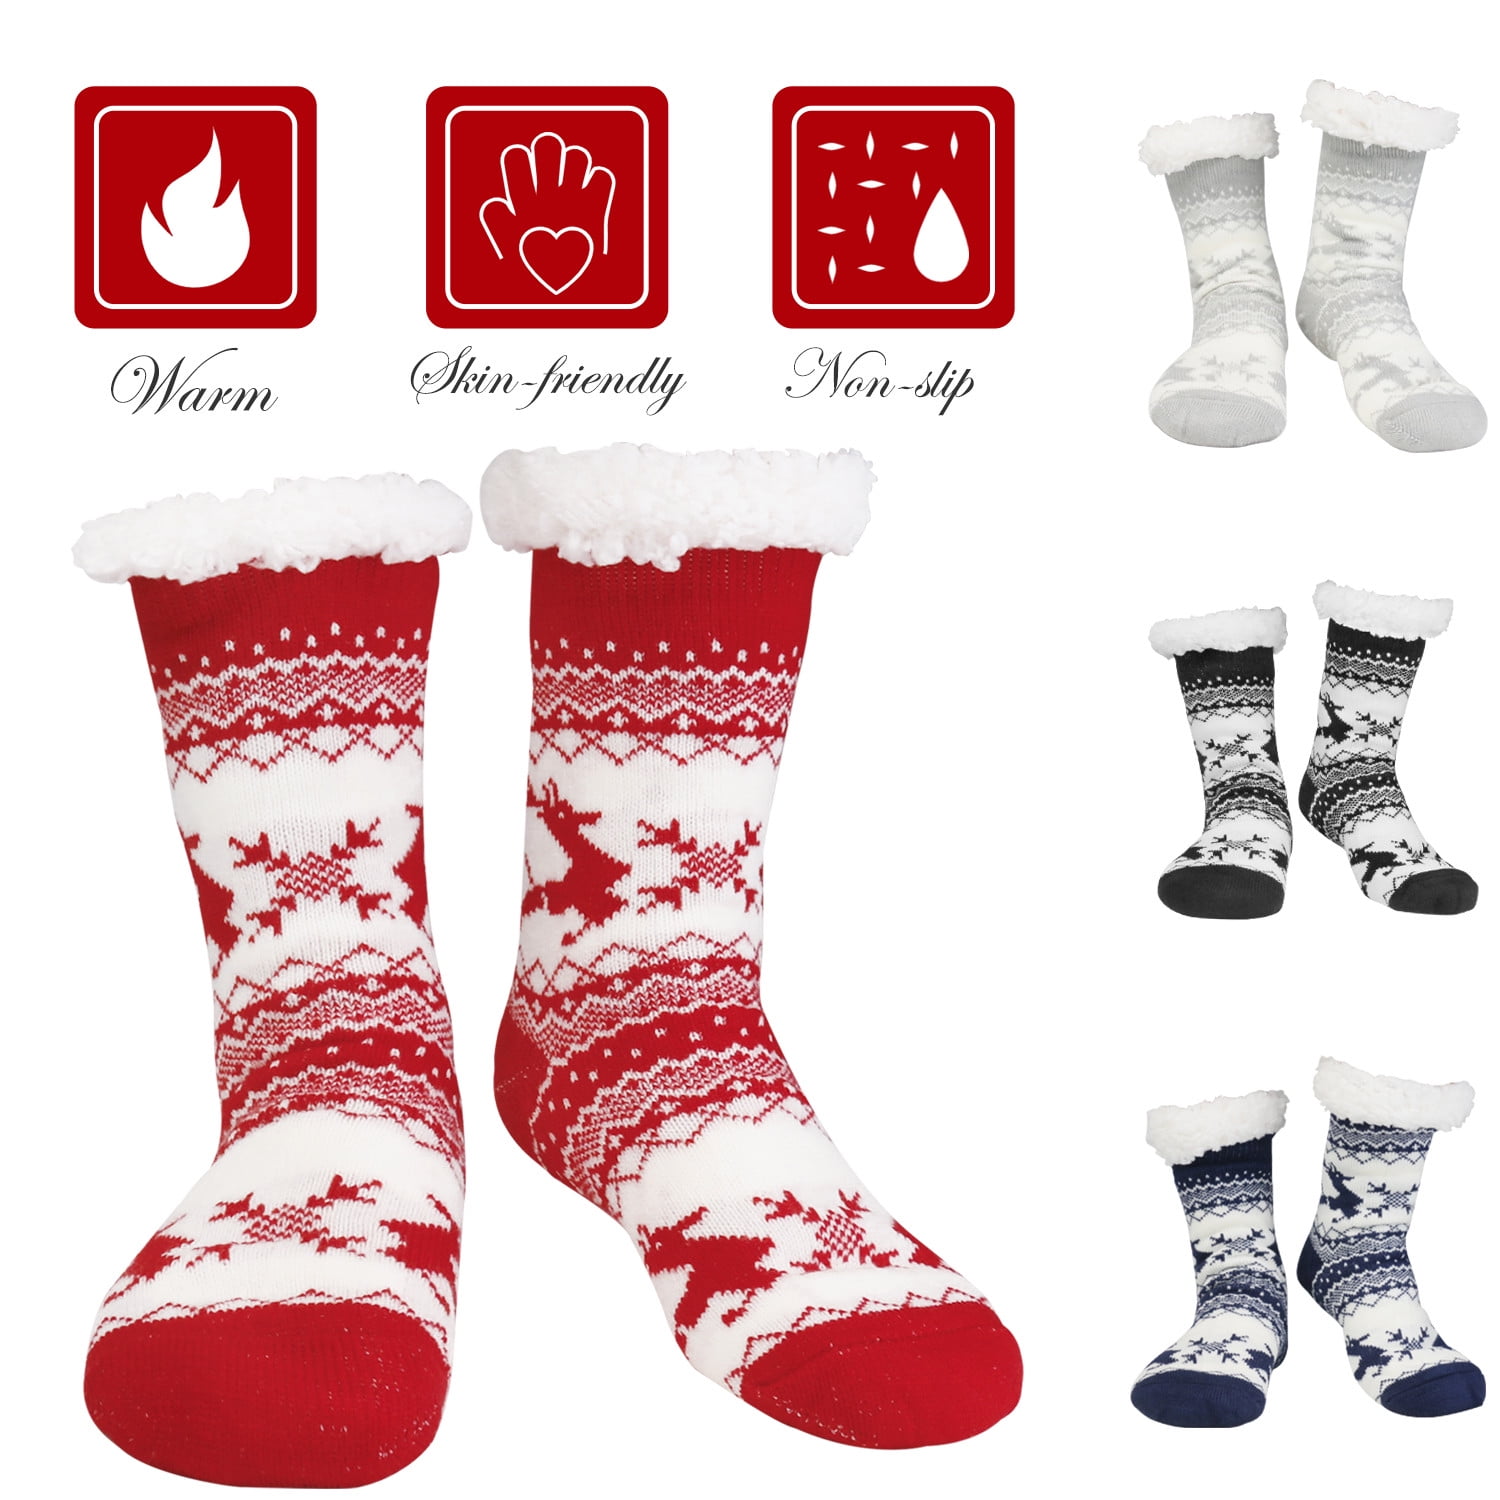 Goodstoworld Unisex Women/Men Winter Christmas Slipper Socks Non-Slip Soft Warm Fluffy Fleece Socks